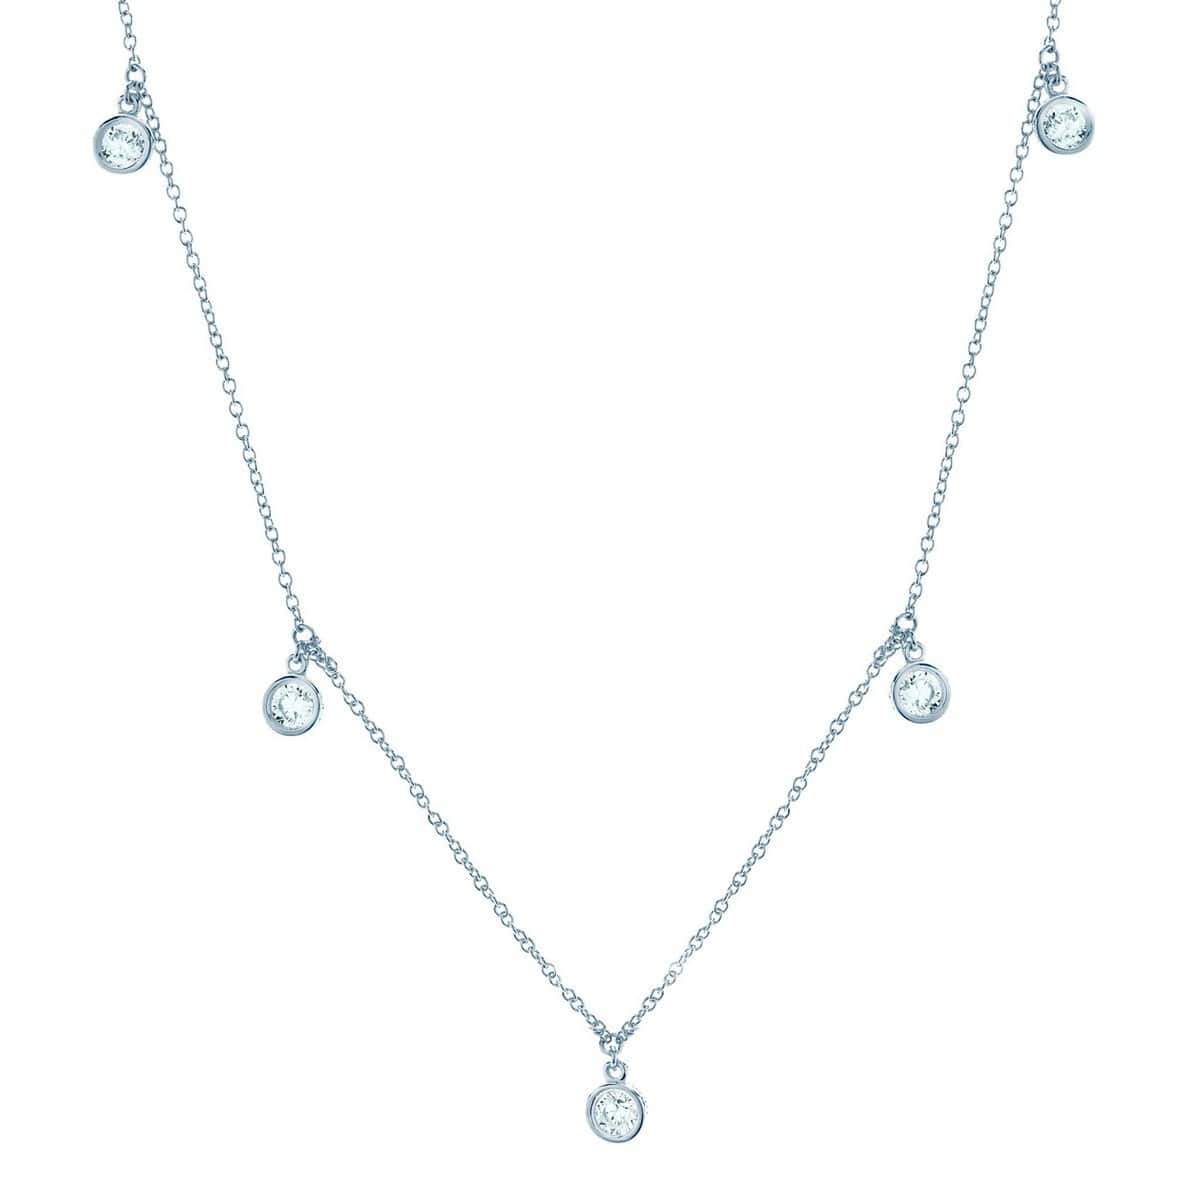 Crislu Jewelry CRISLU Drop Bezel Necklace Finished in Pure Platinum - 16"